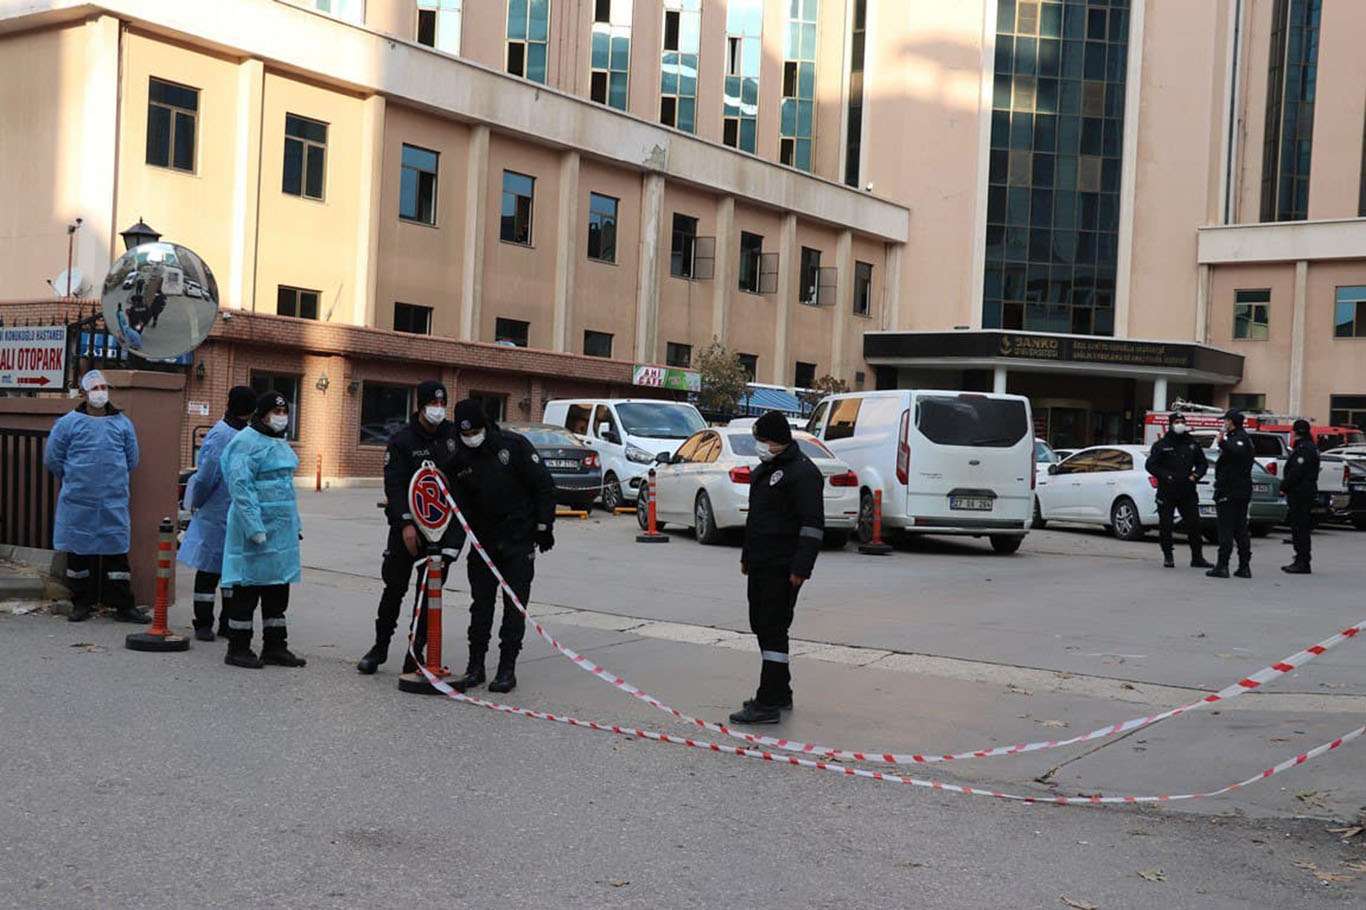 8 people killed in hospital fire in southeastern Turkey